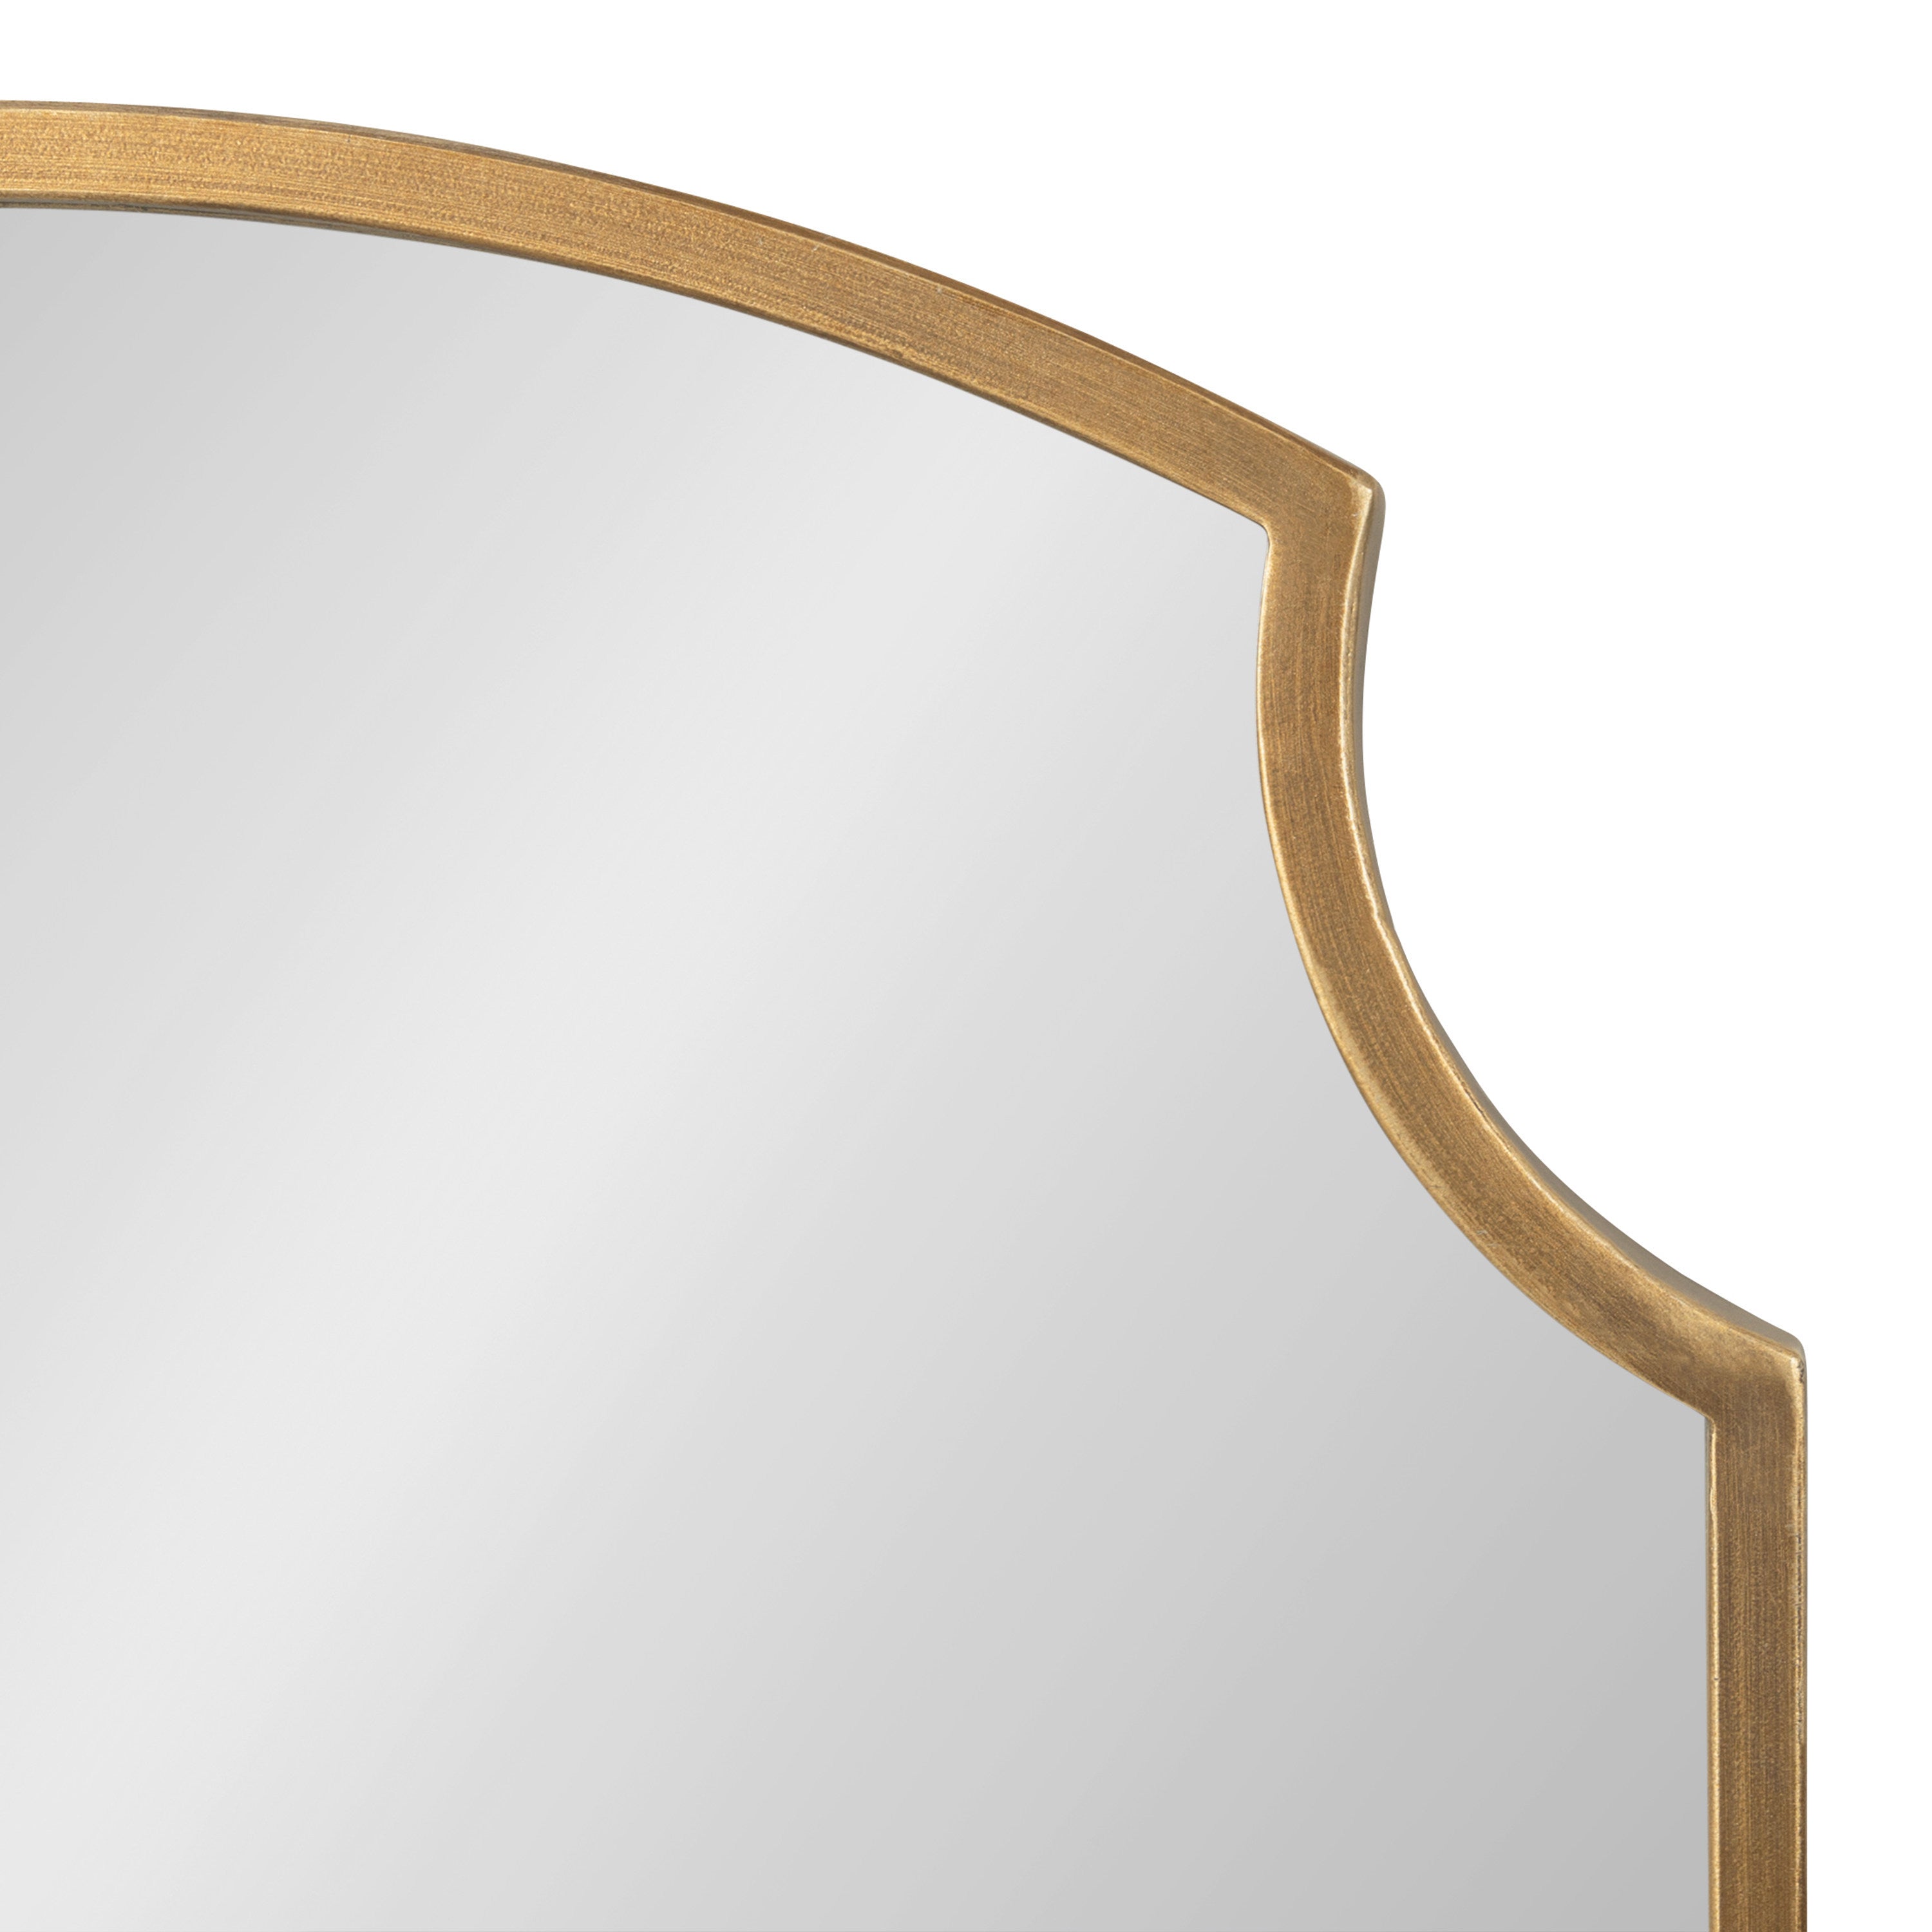 Carlow Framed Wall Mirror